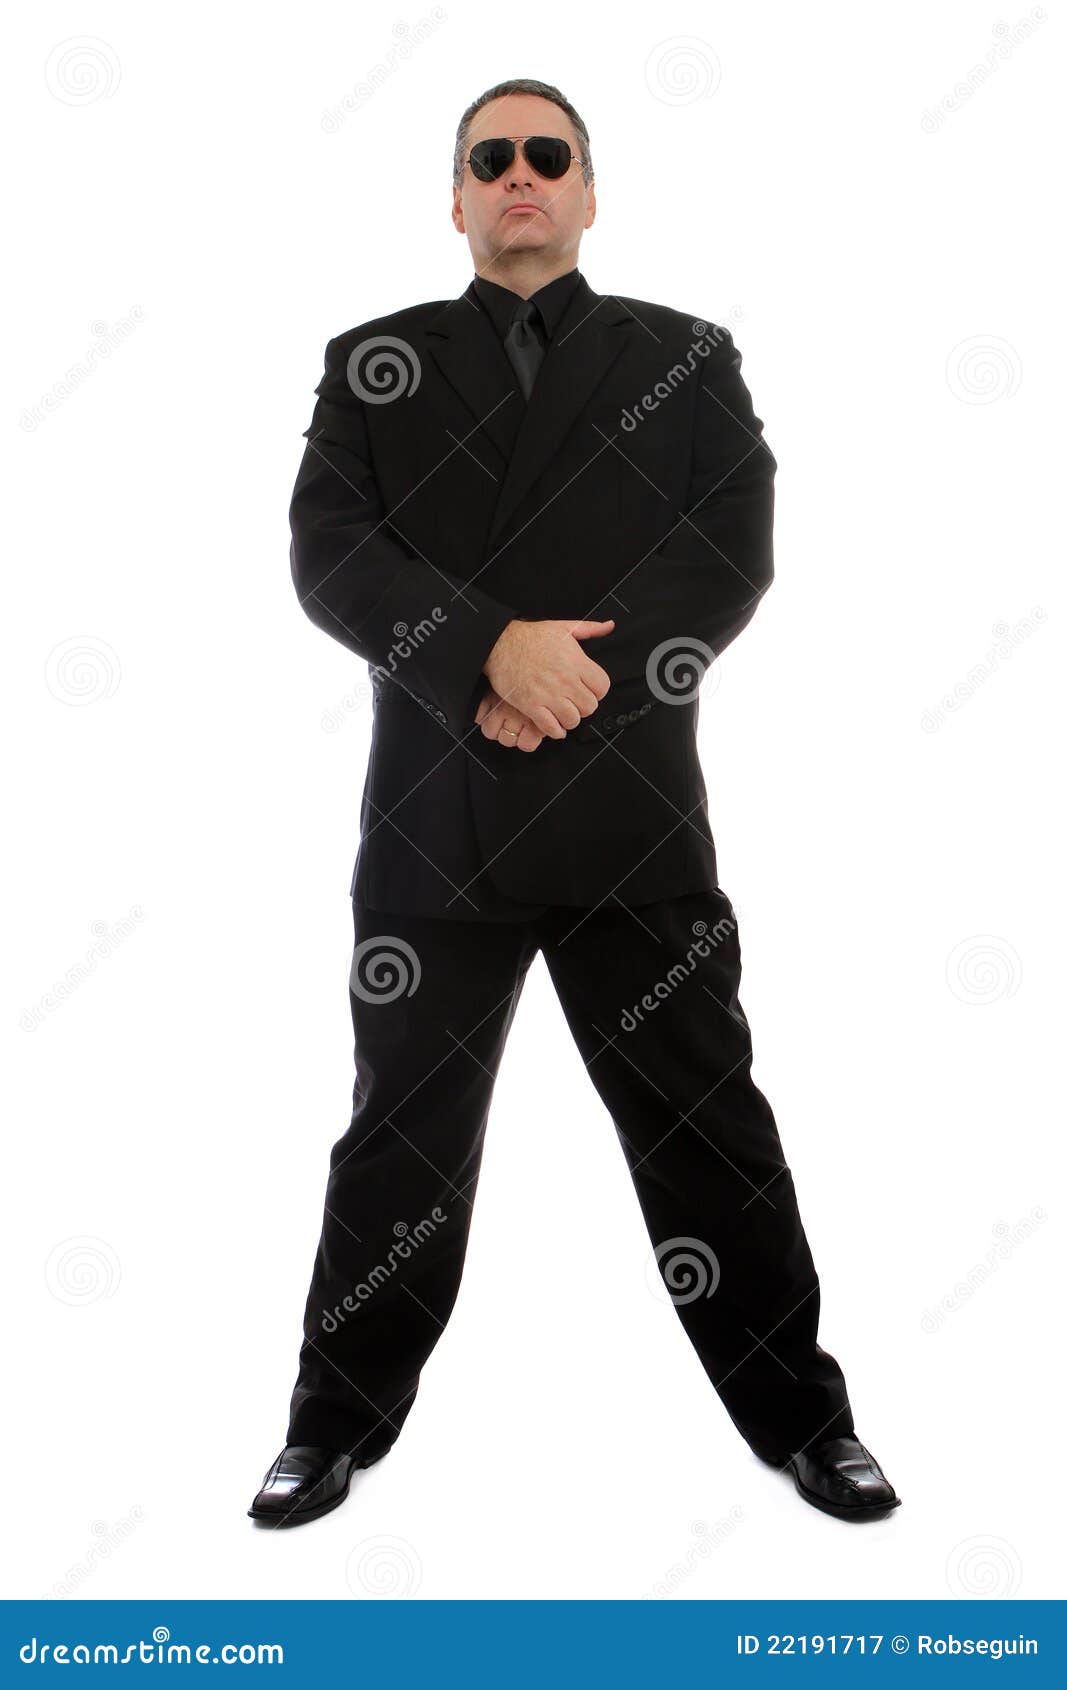 man in black suit